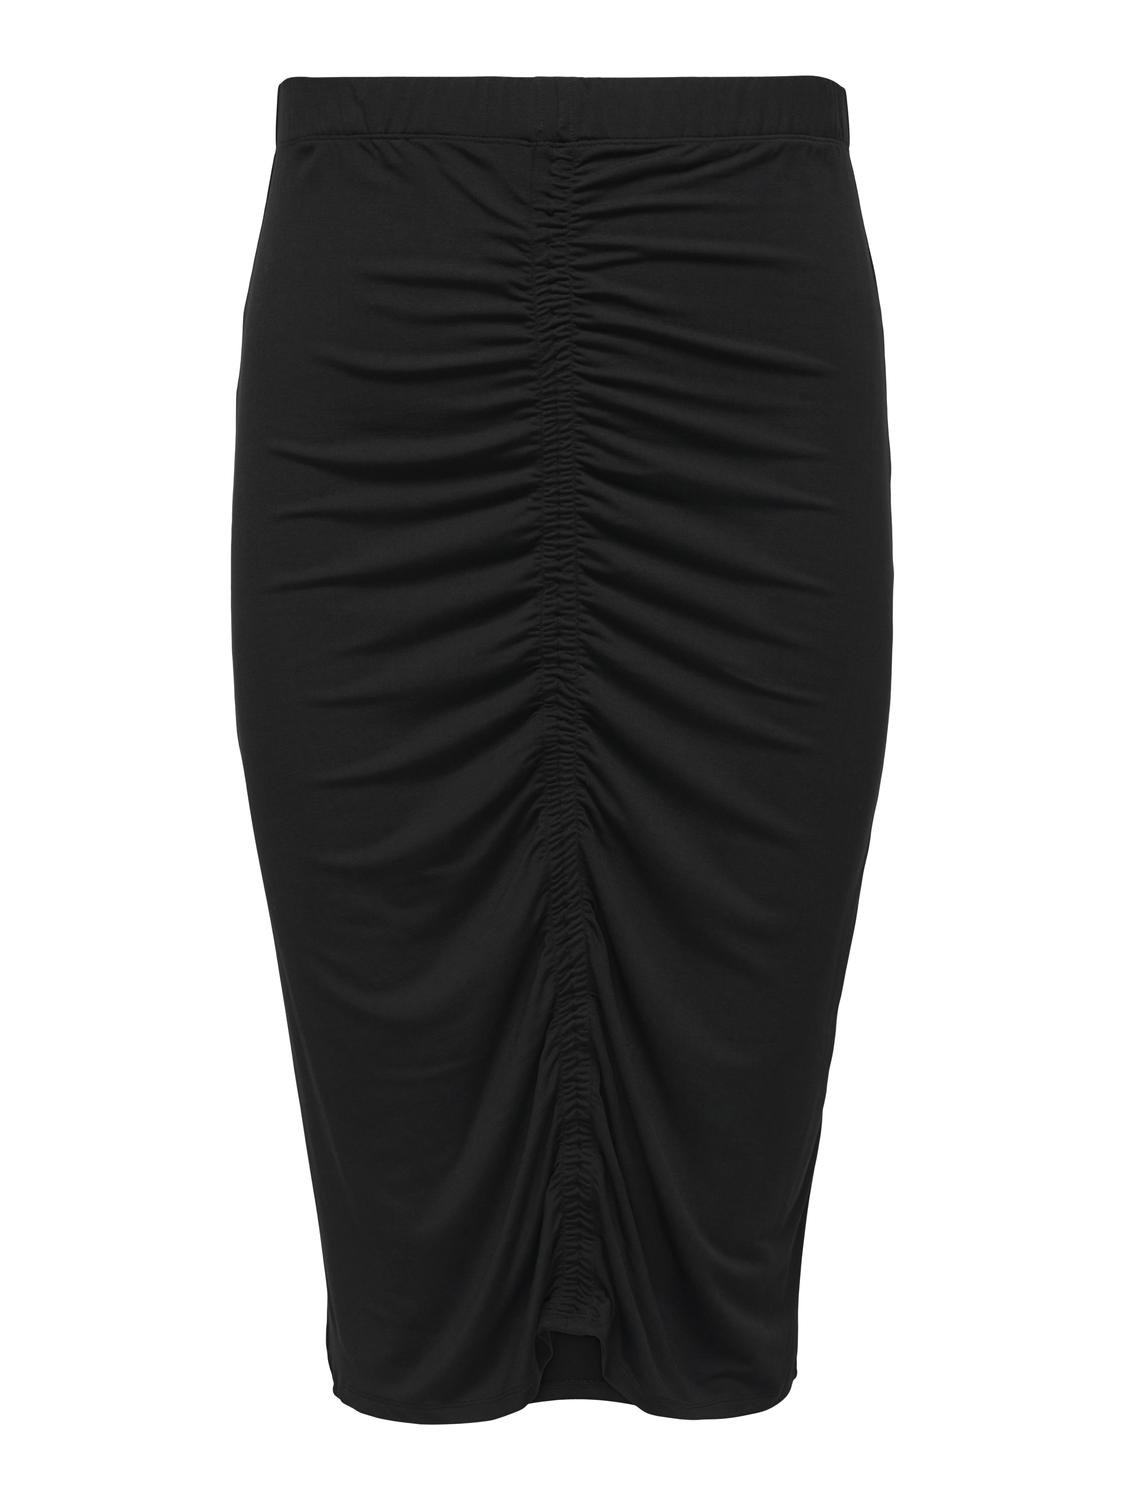 ONLY Midi skirt -Black - 15312189